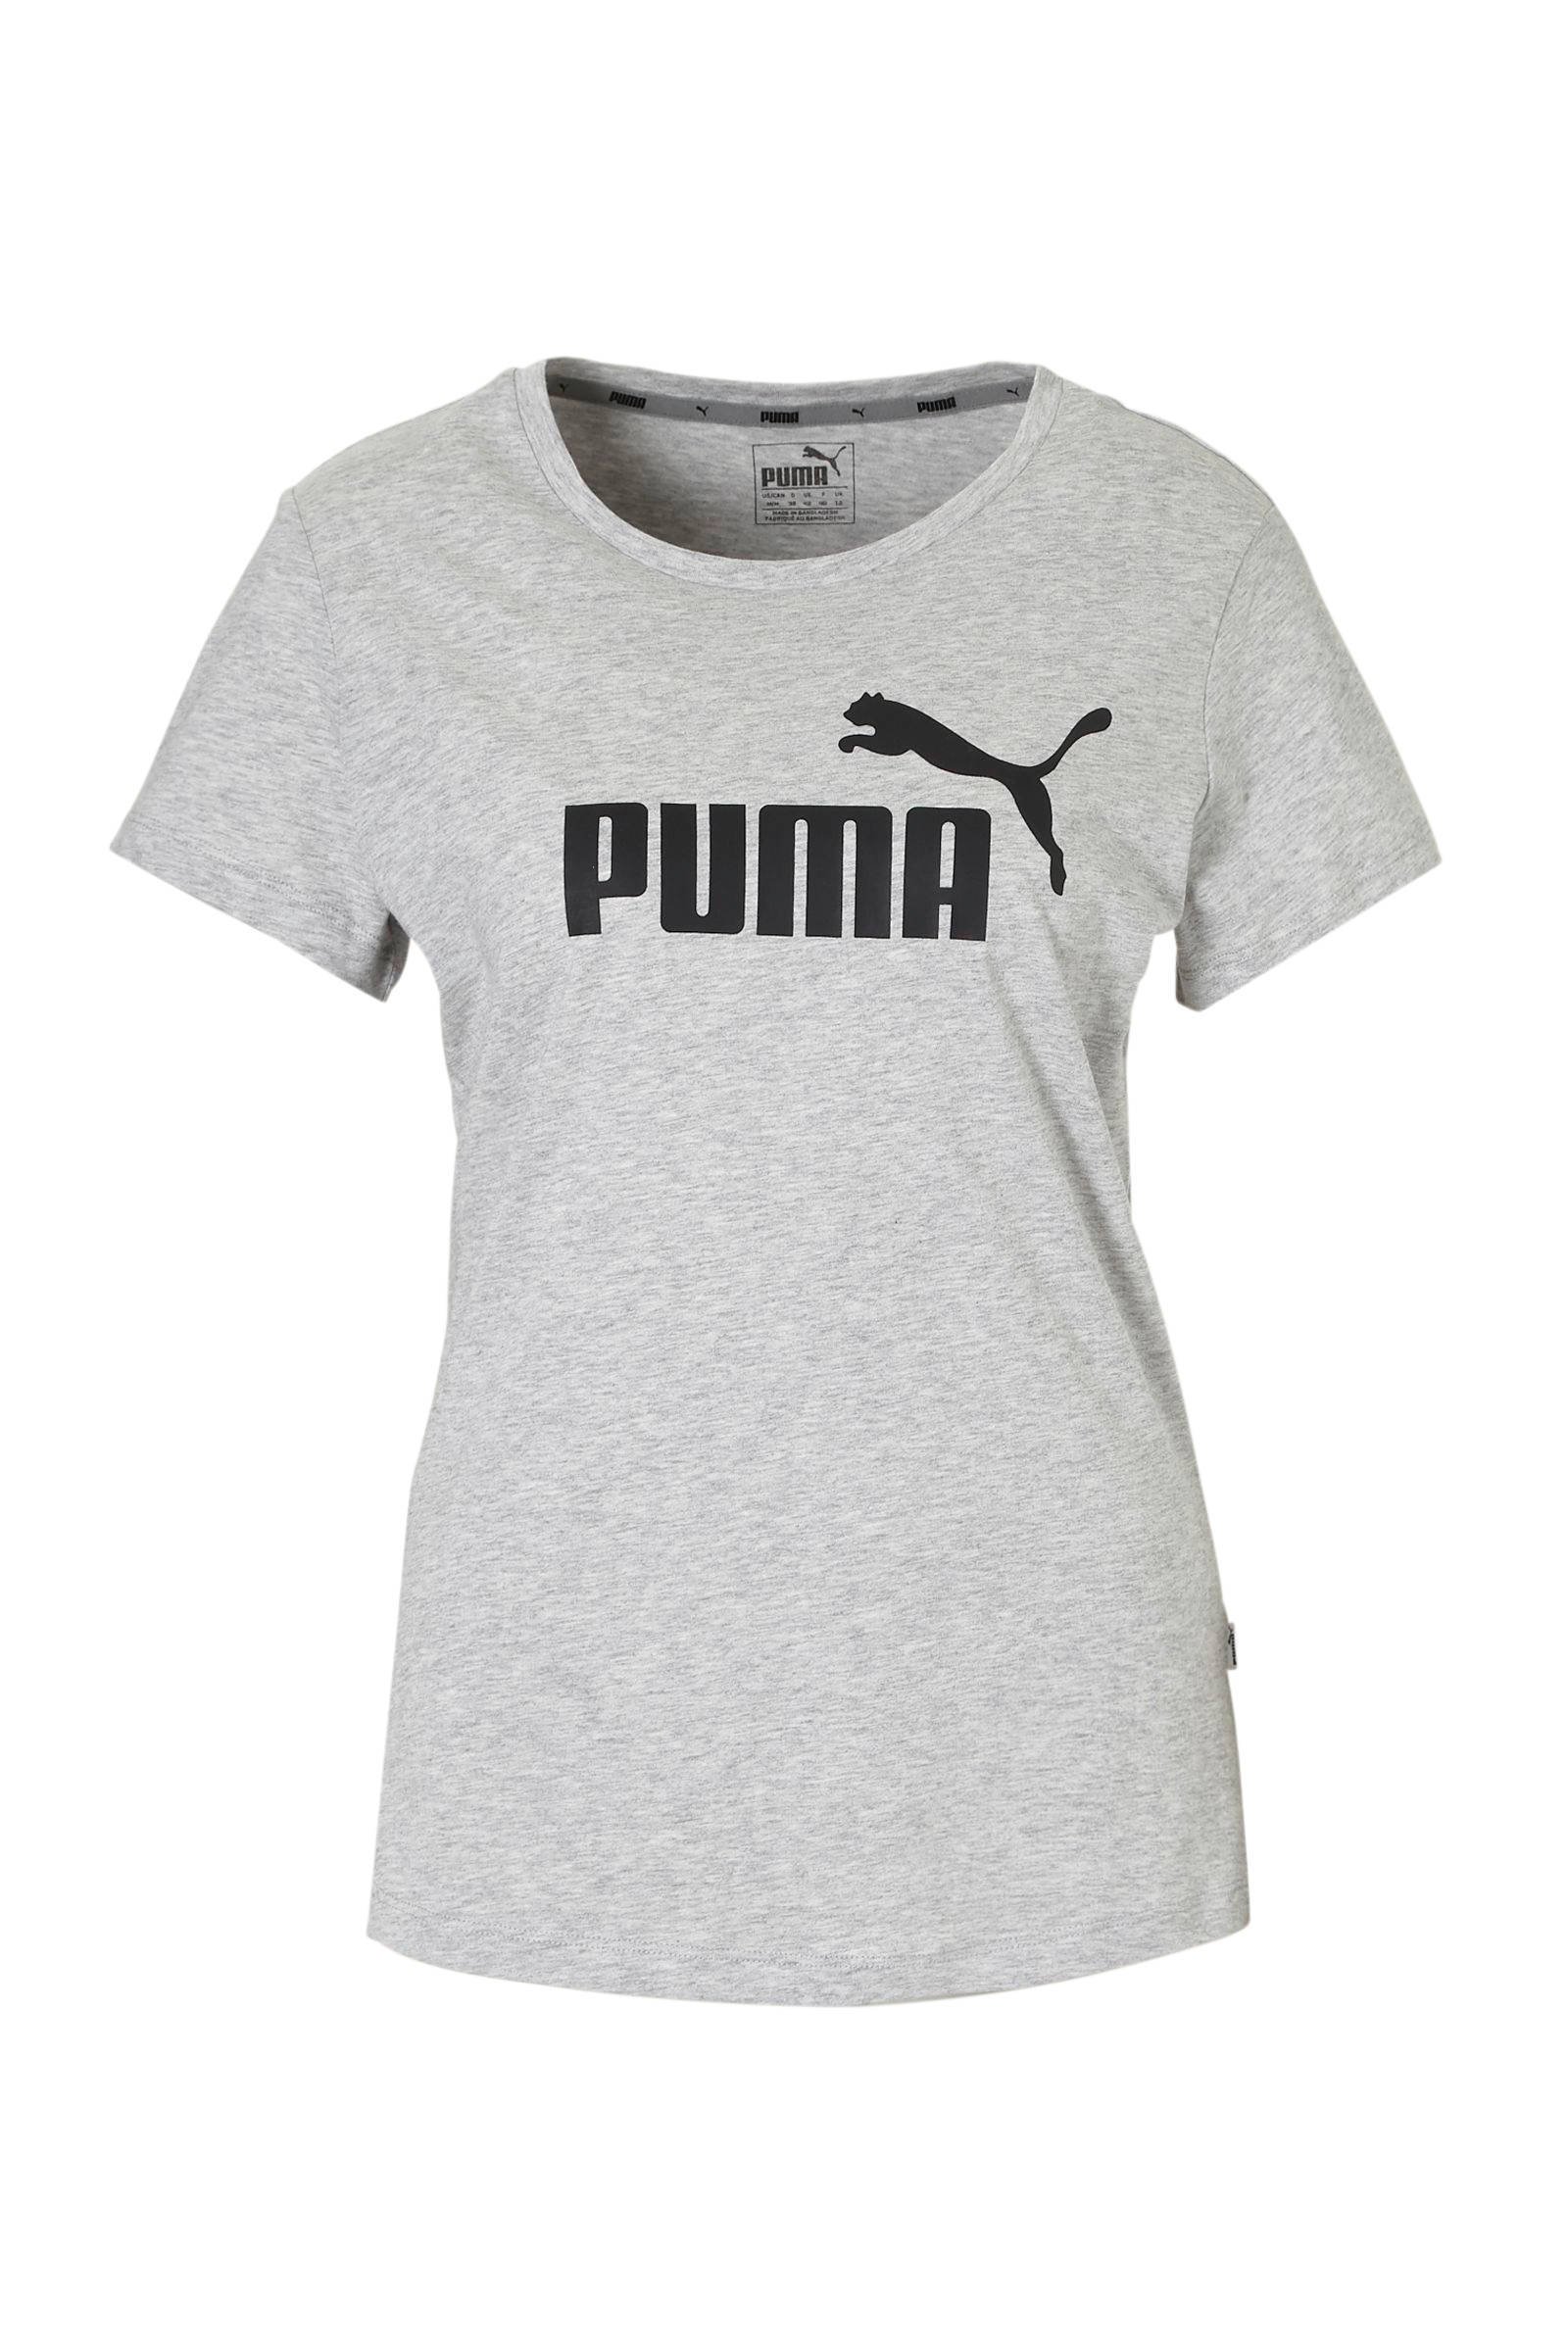 puma t shirt offer